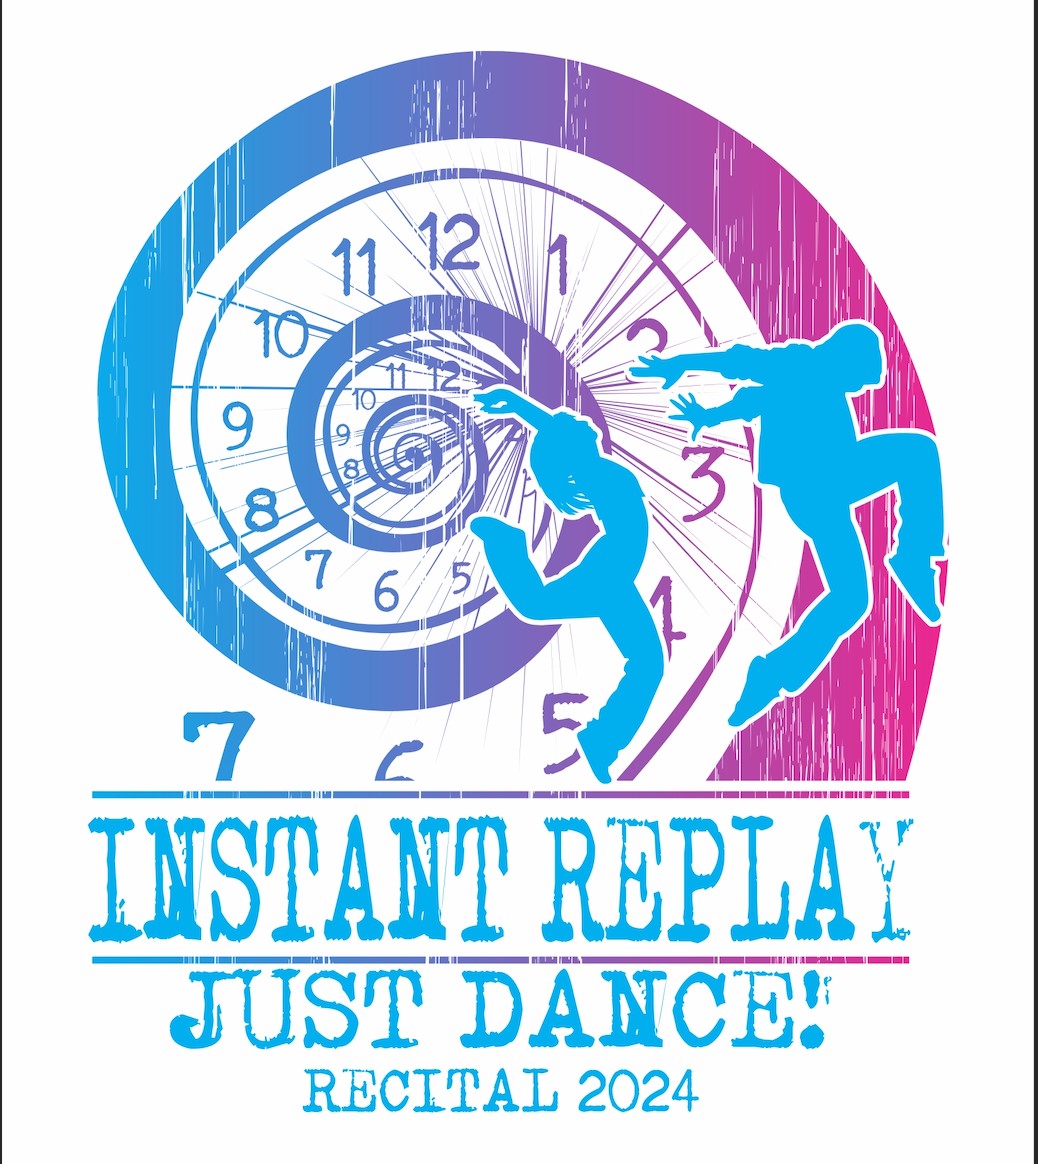 Instant Replay 2024 JUST DANCE! RECITAL on jun. 03, 00:00@Yorktown Stage 2023 - Elegir asientoCompra entradas y obtén información enYorktown Stage 